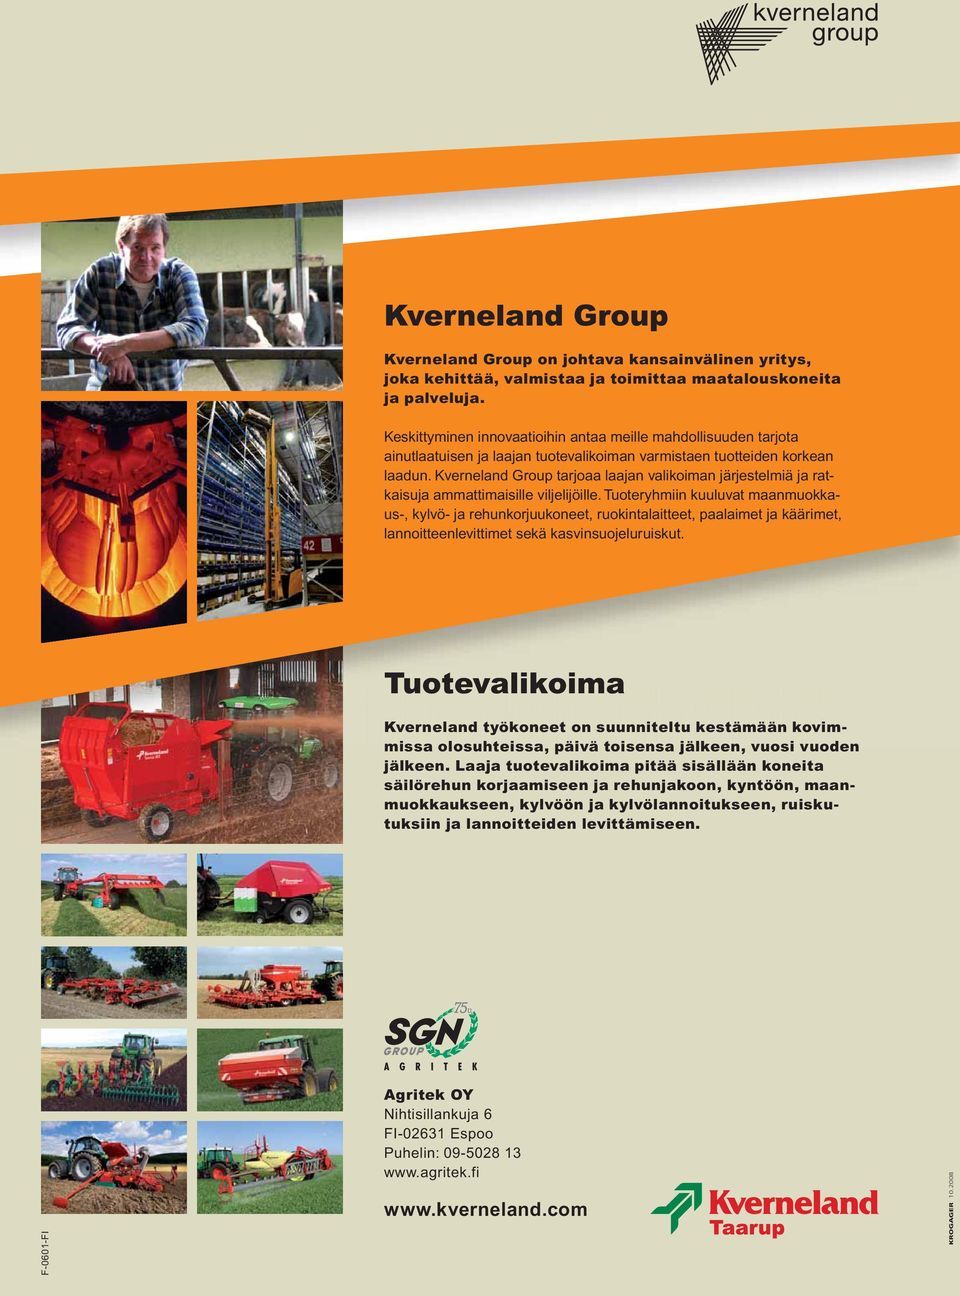 Kverneland Group tarjoaa laajan valikoiman järjestelmiä ja ratkaisuja ammattimaisille viljelijöille.